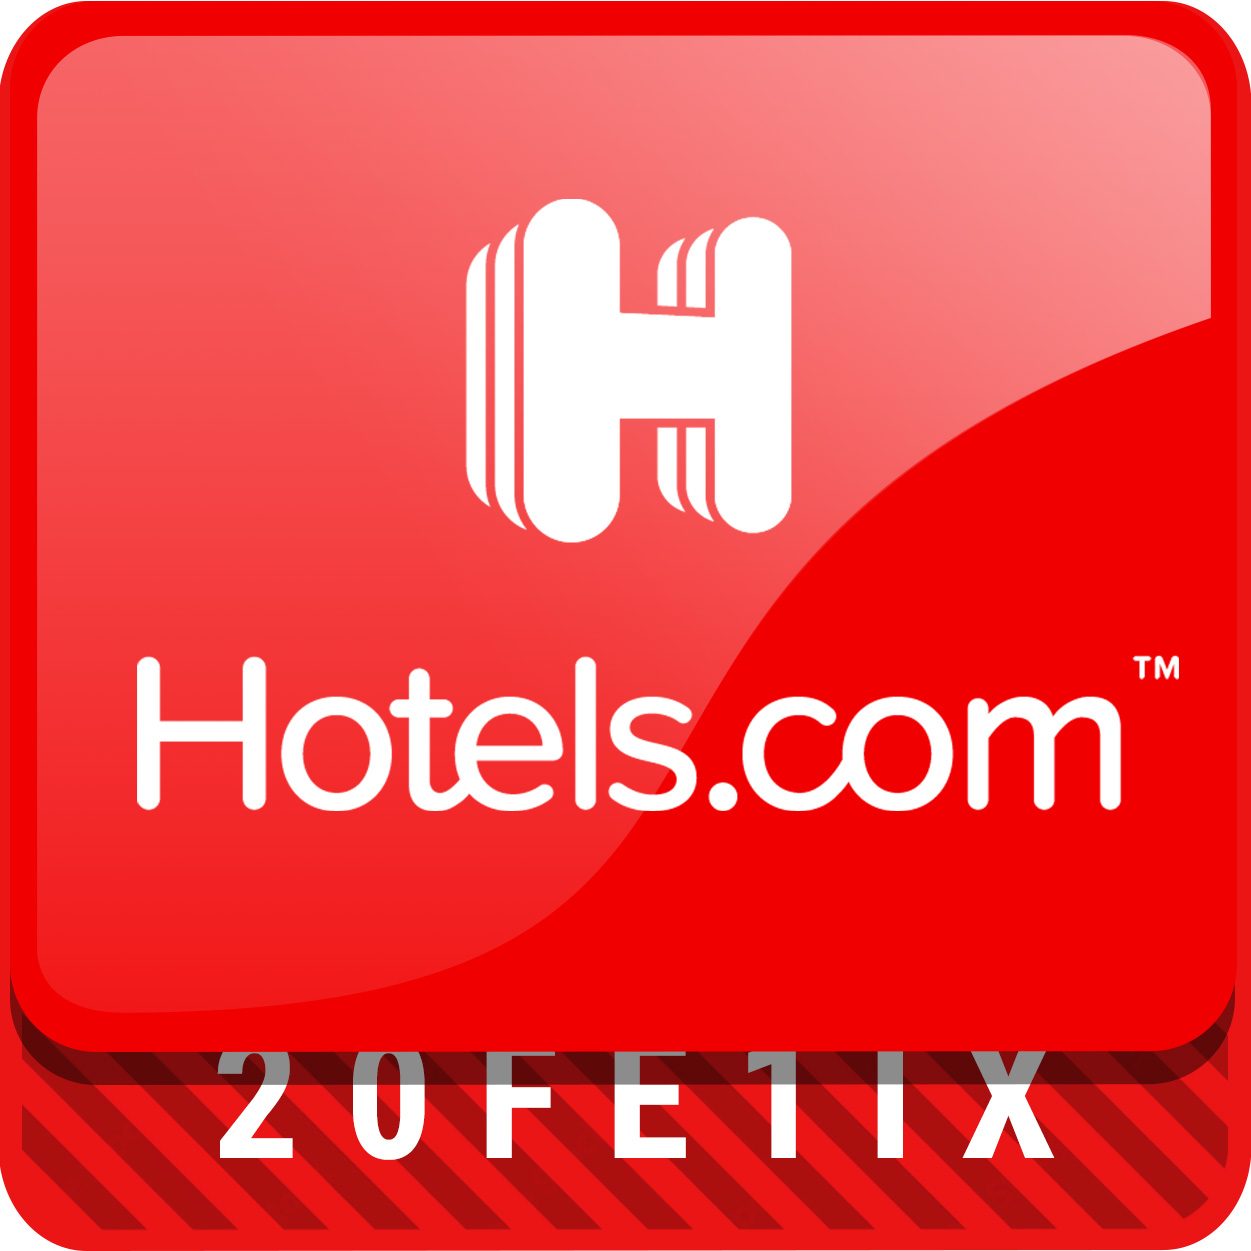 Hotels.com rabattkod och erbjudanden